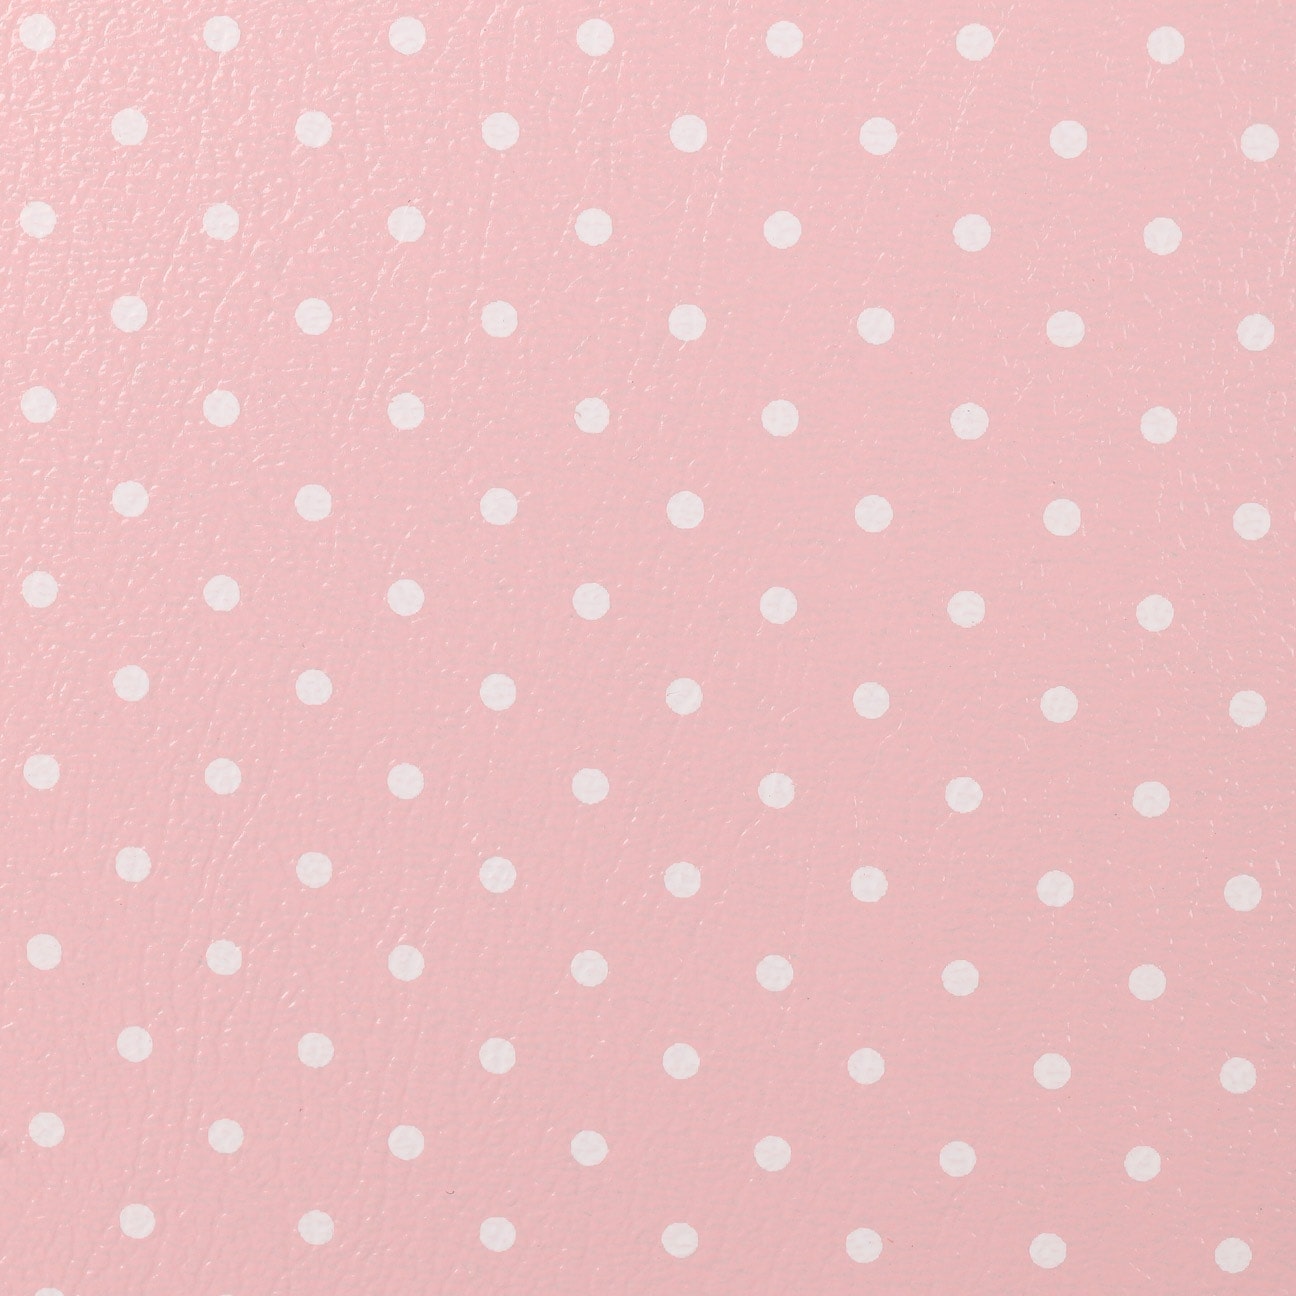 Hat Box Beige Dots by Lierys Col. Beige, Size